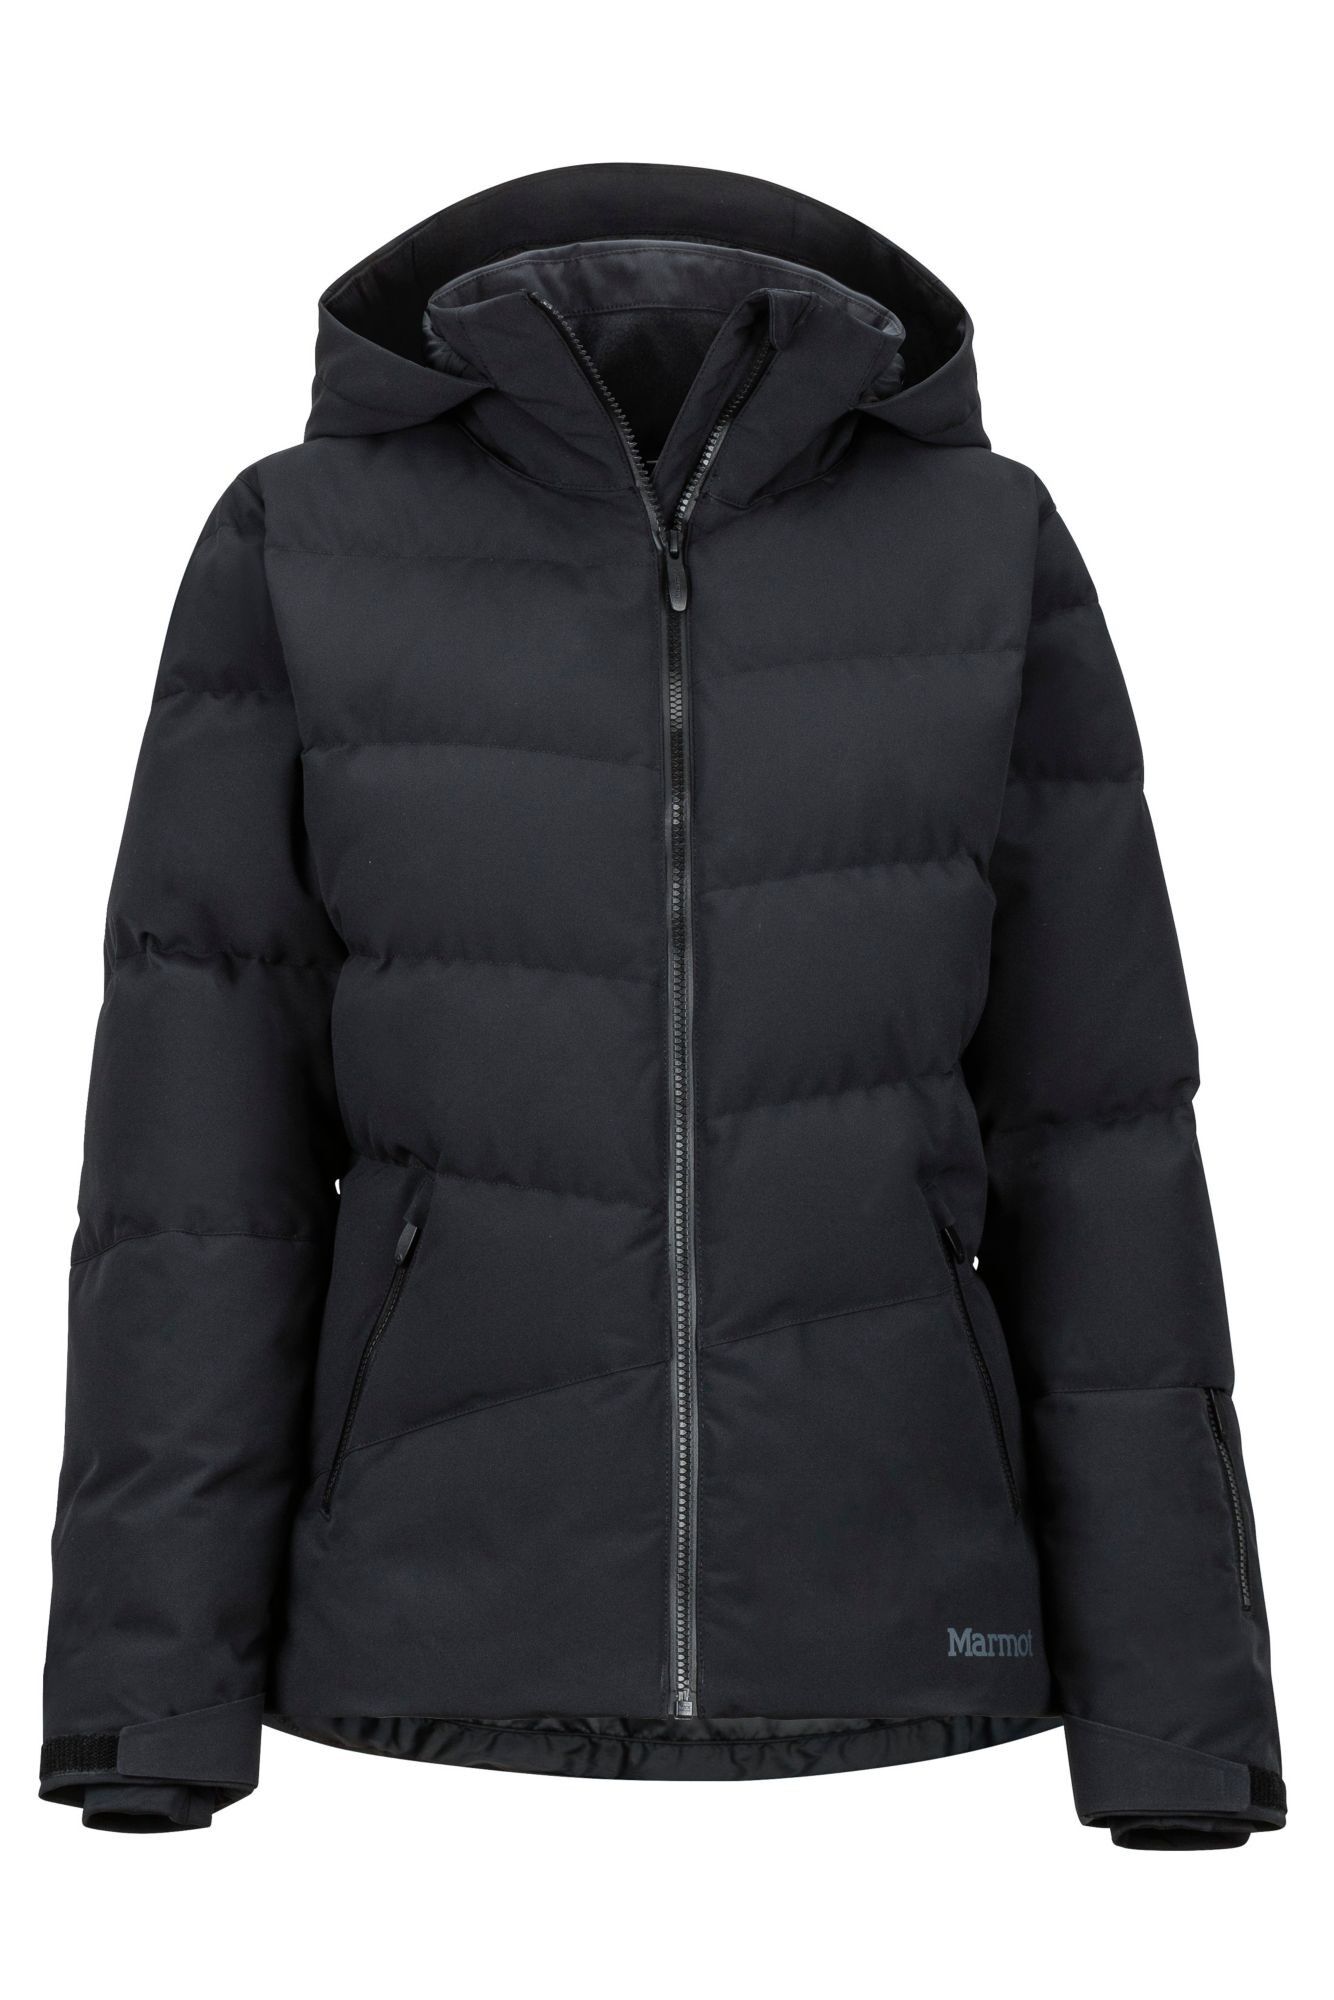 Marmot Slingshot Jacket - Veste ski femme | Hardloop